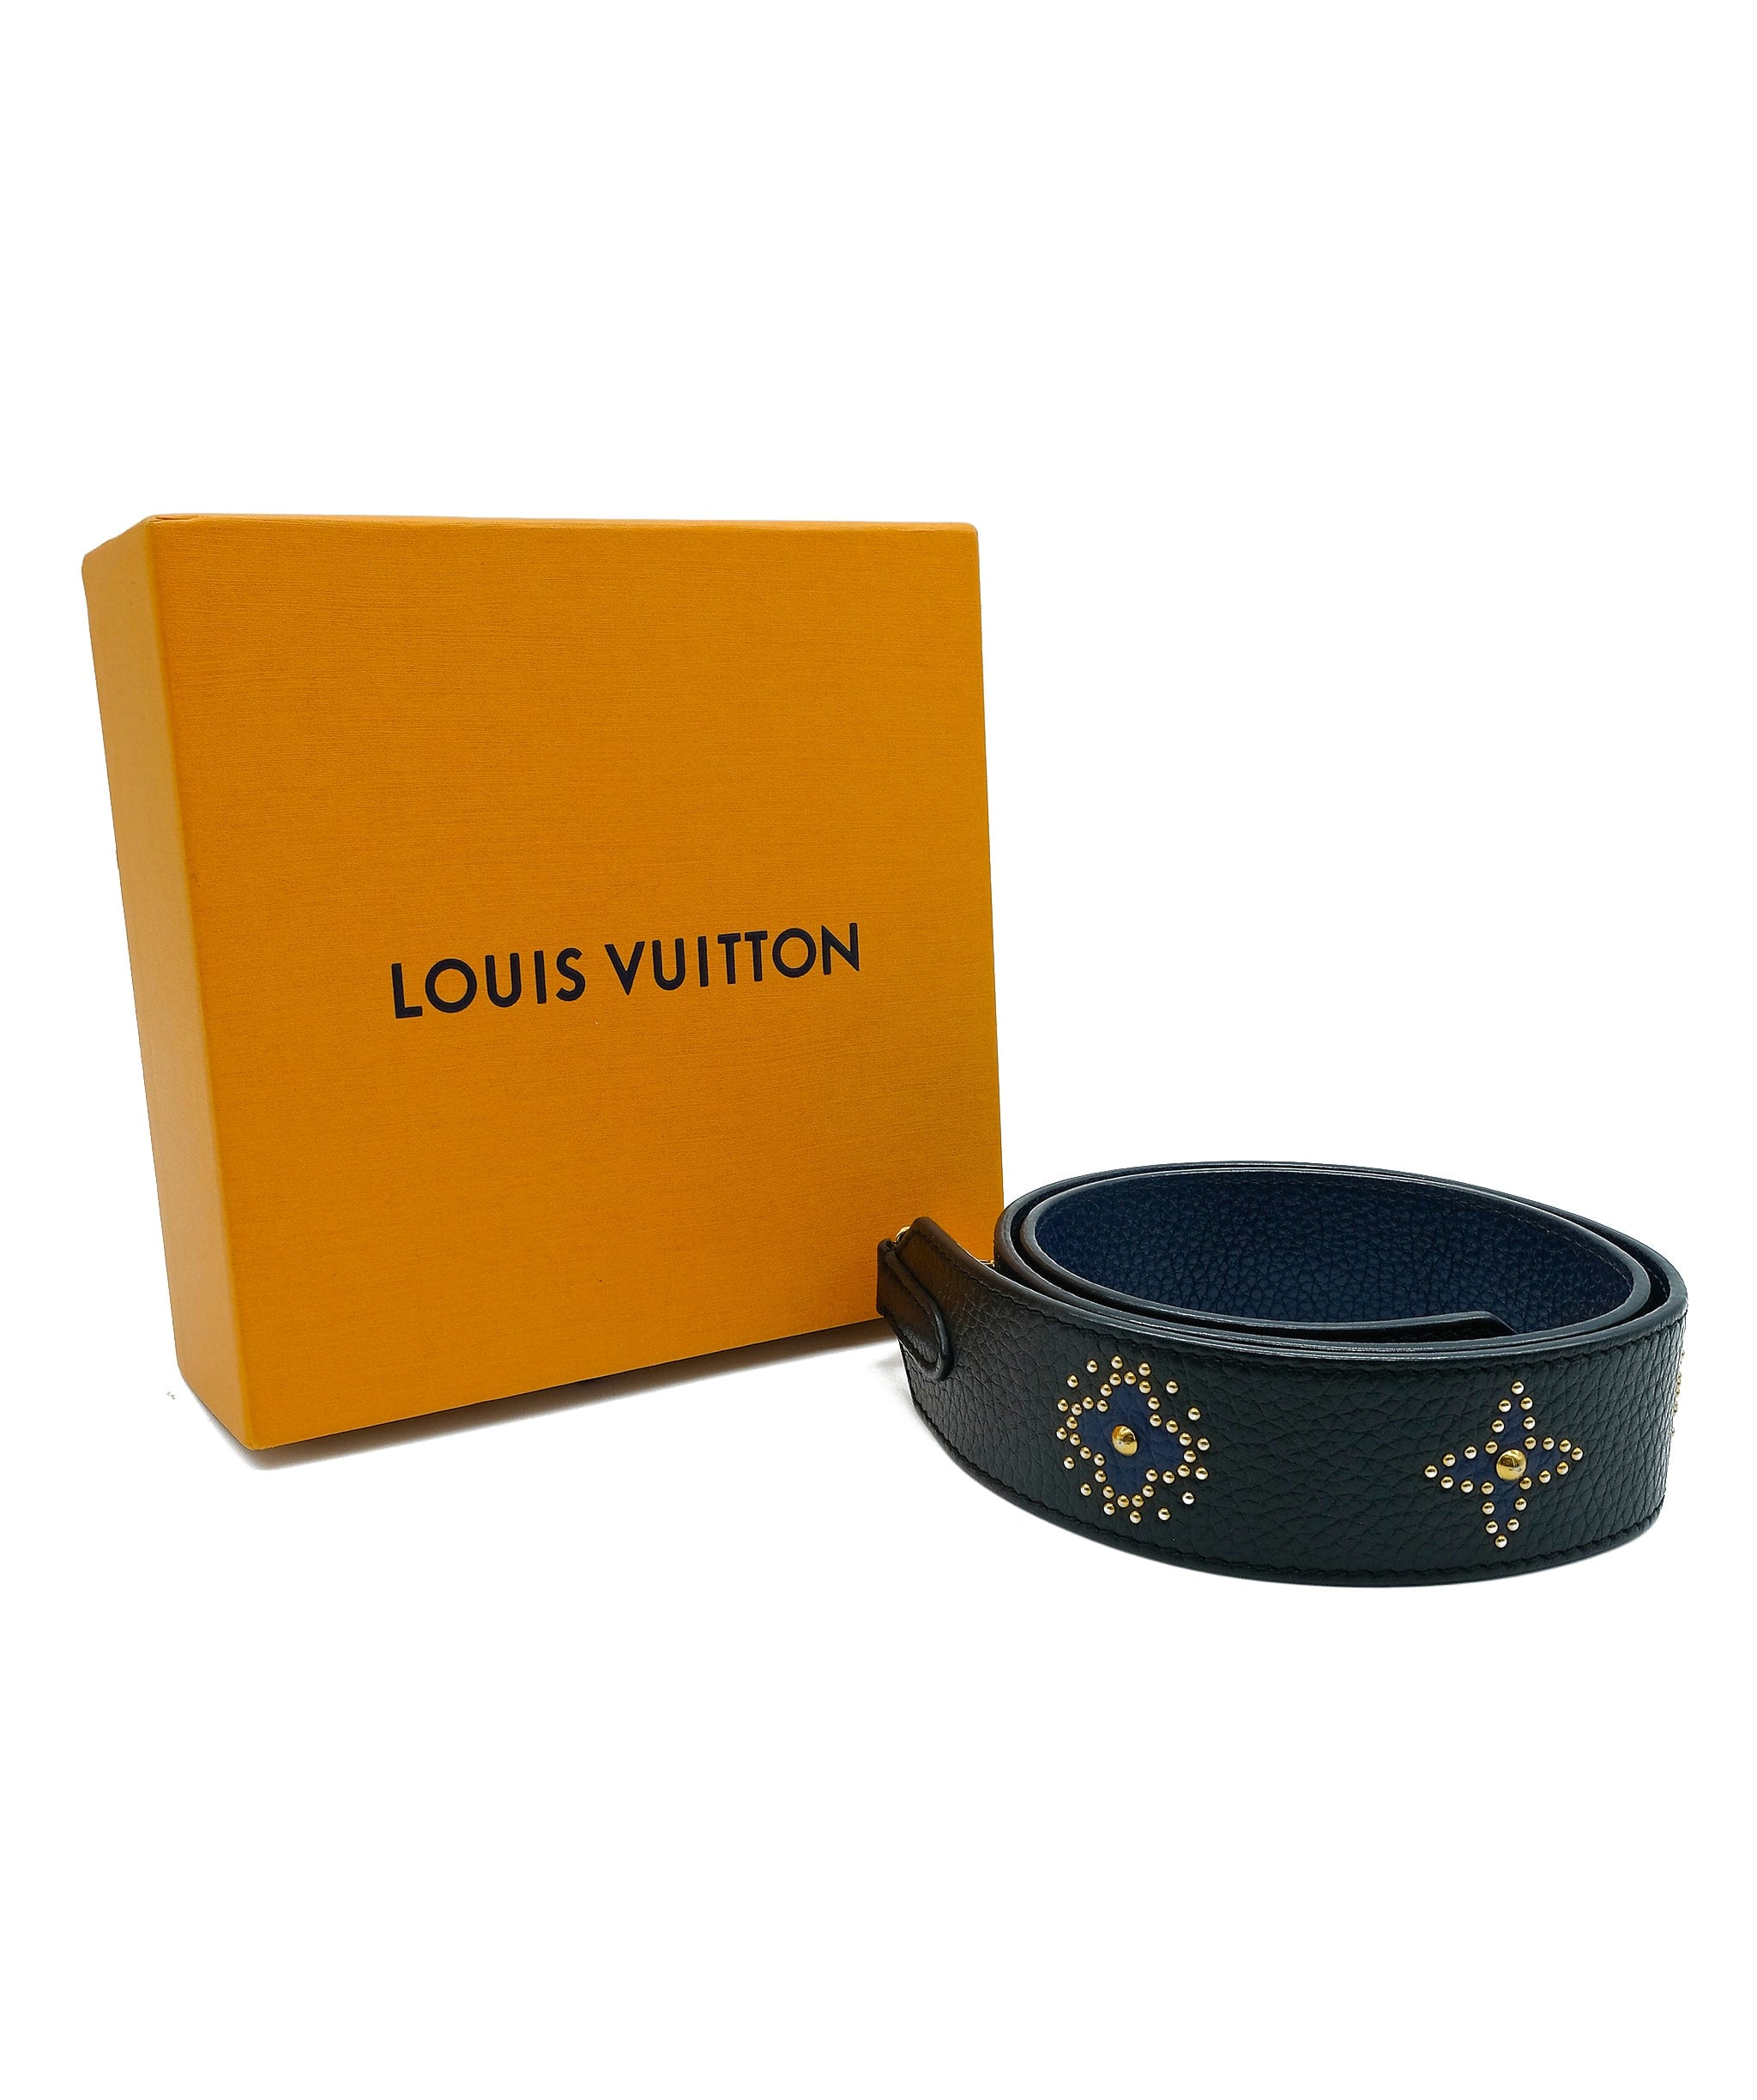 Louis Vuitton, Other, Louis Vuitton Other Empty Louis Vuitton Box Color  Blueorange